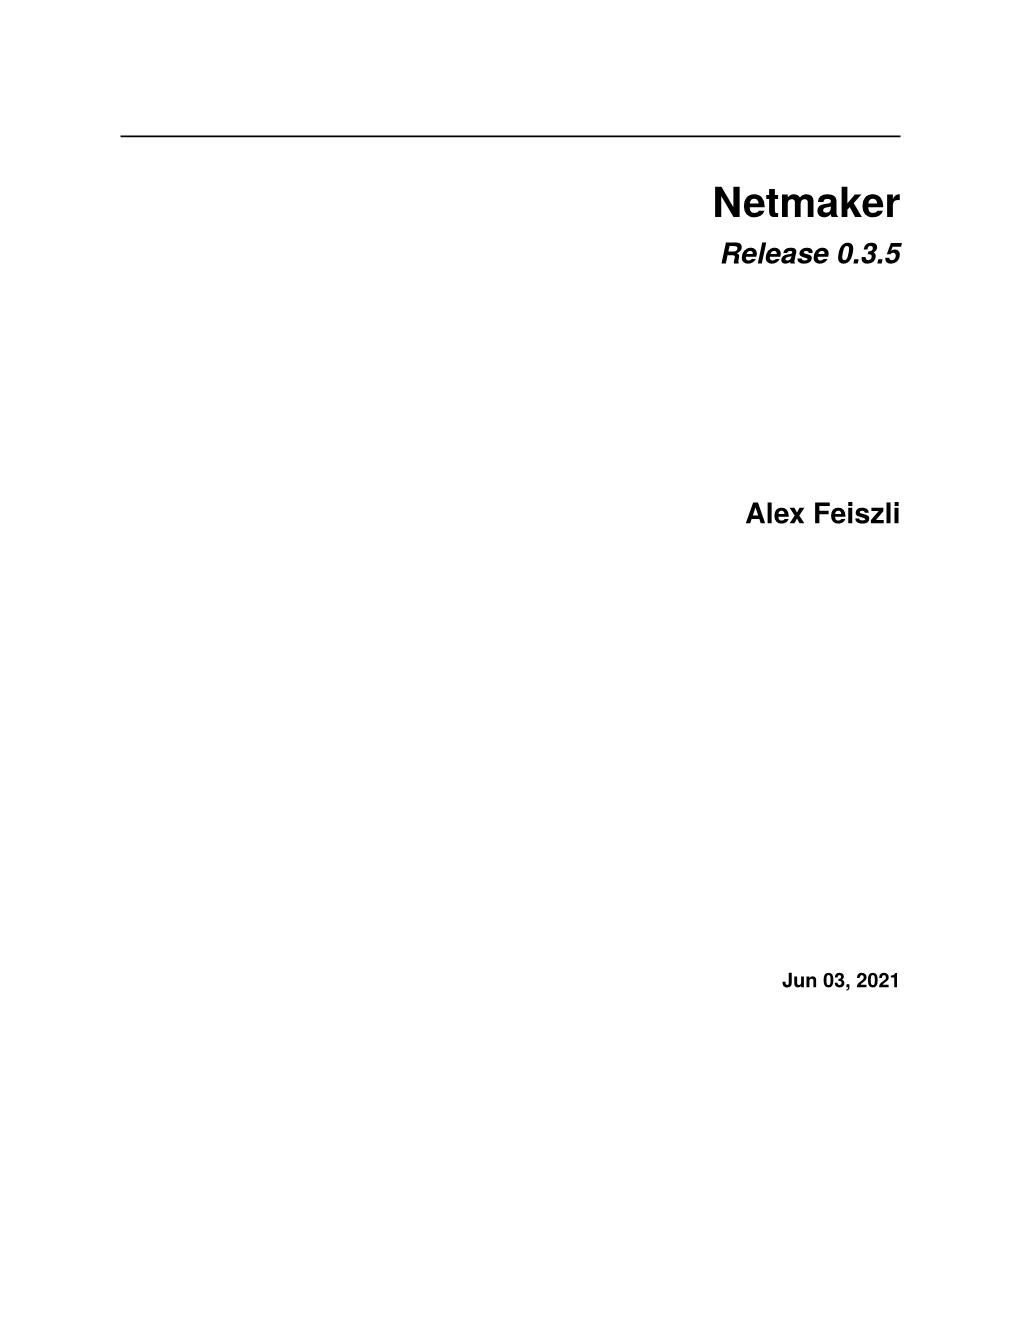 Netmaker Release 0.3.5